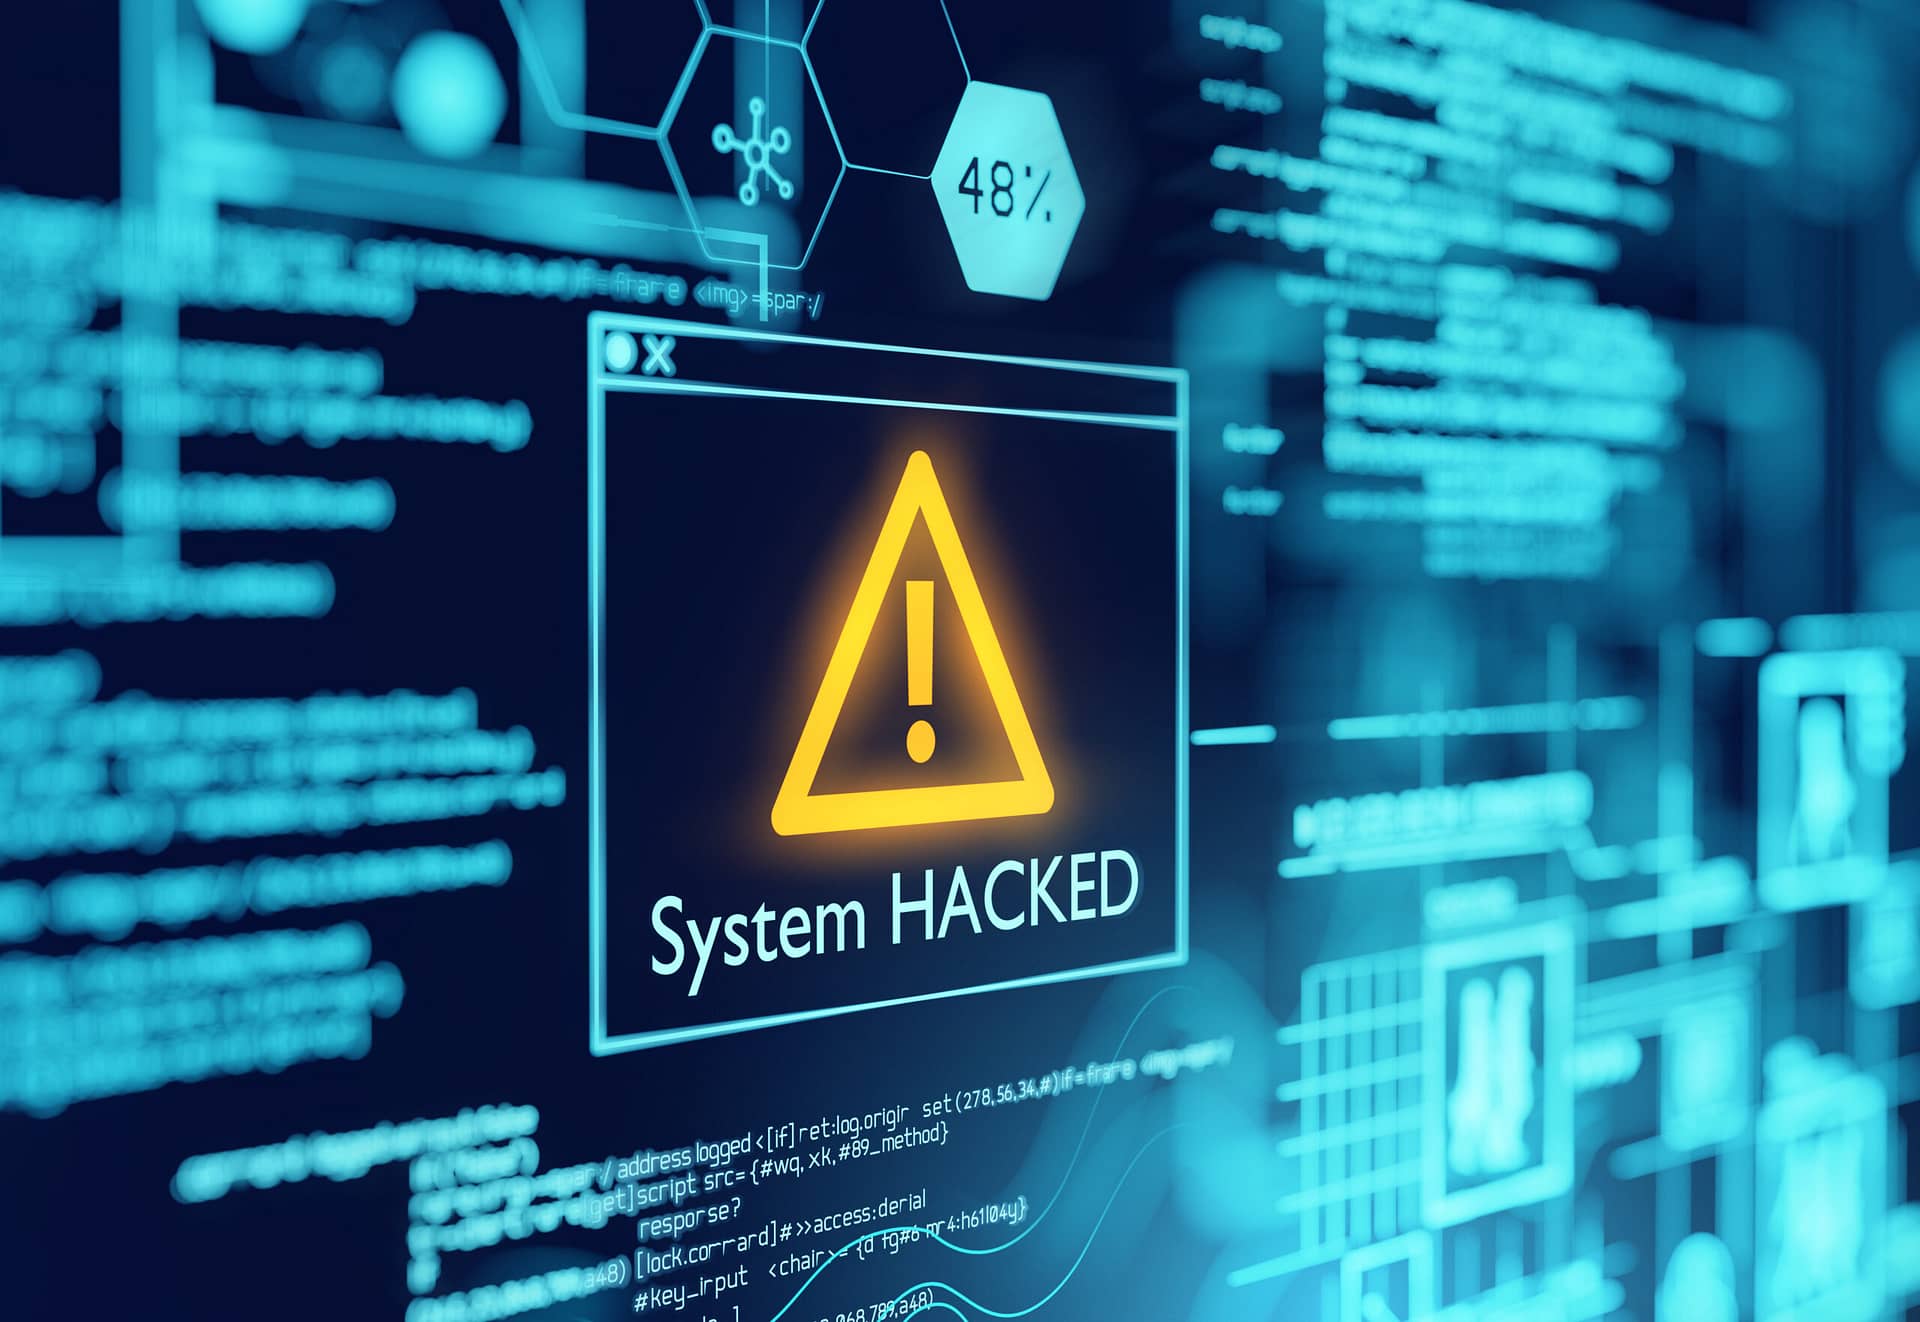 Ein Bildschirm mit einer Sicherheitswarnung "System Hacked".